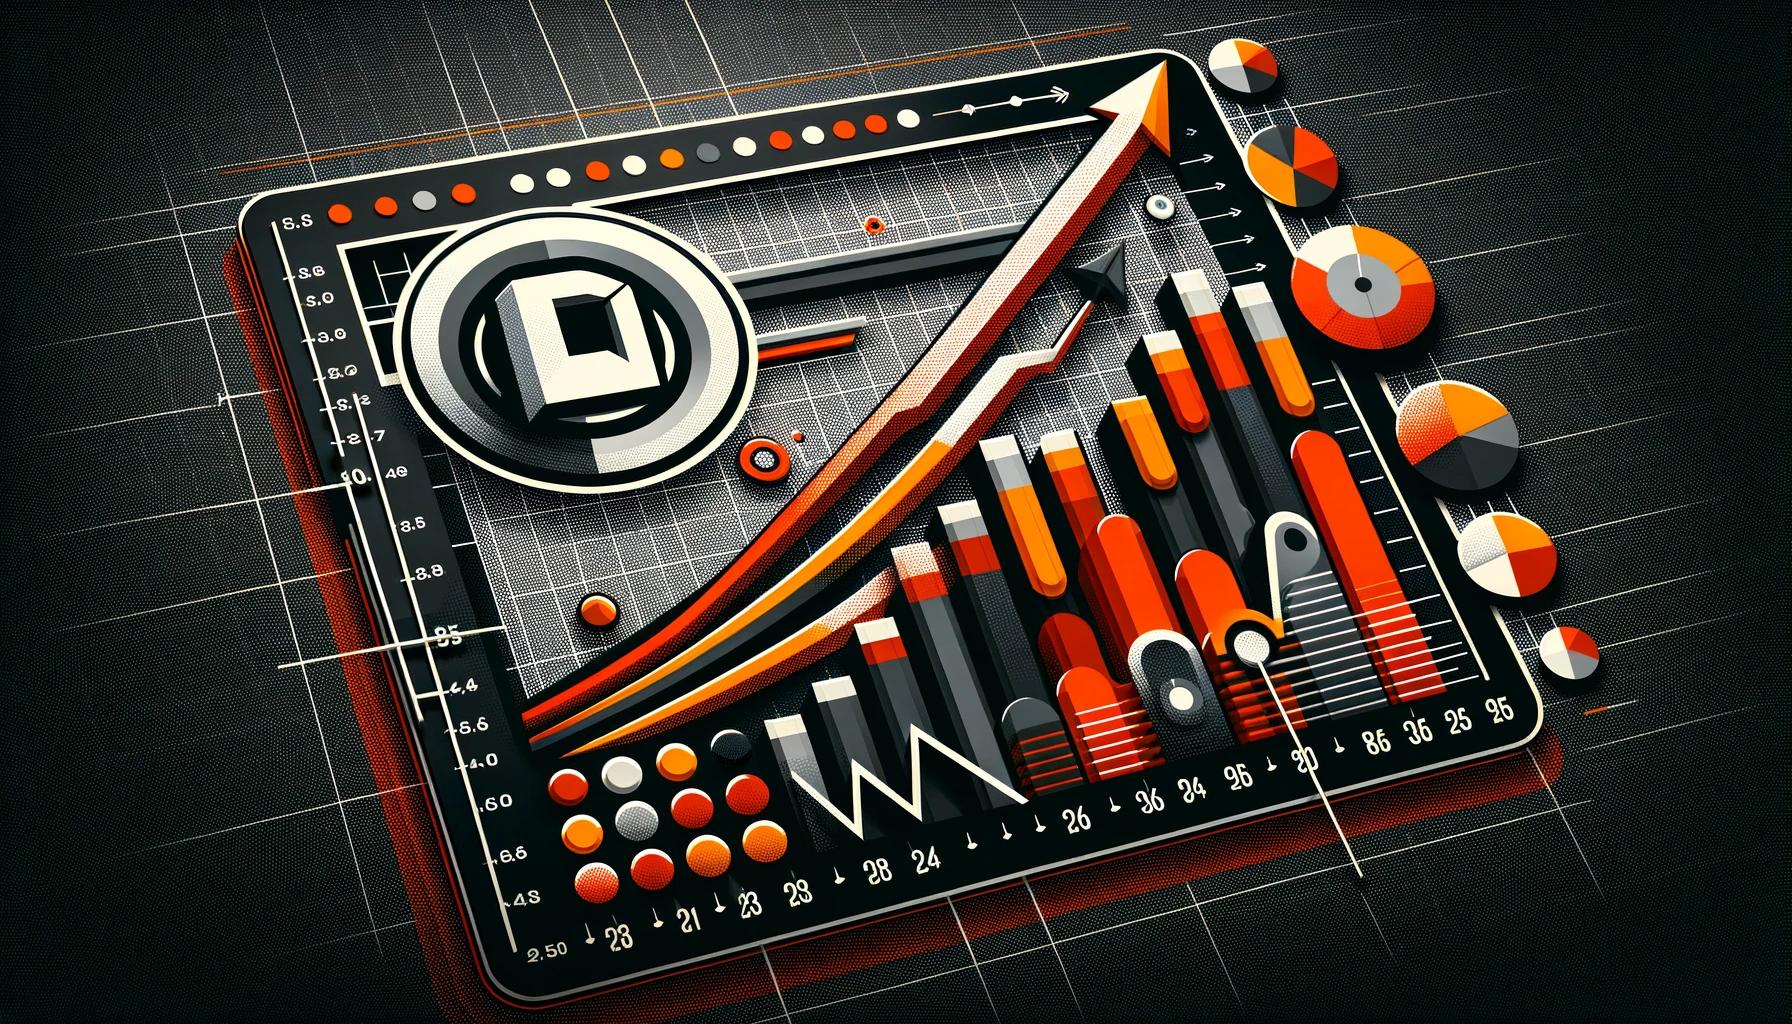 Ilustración digital en 3D del crecimiento empresarial, con una flecha ascendente, gráficos financieros y barras en naranja, negro y blanco sobre un fondo de cuadrícula.